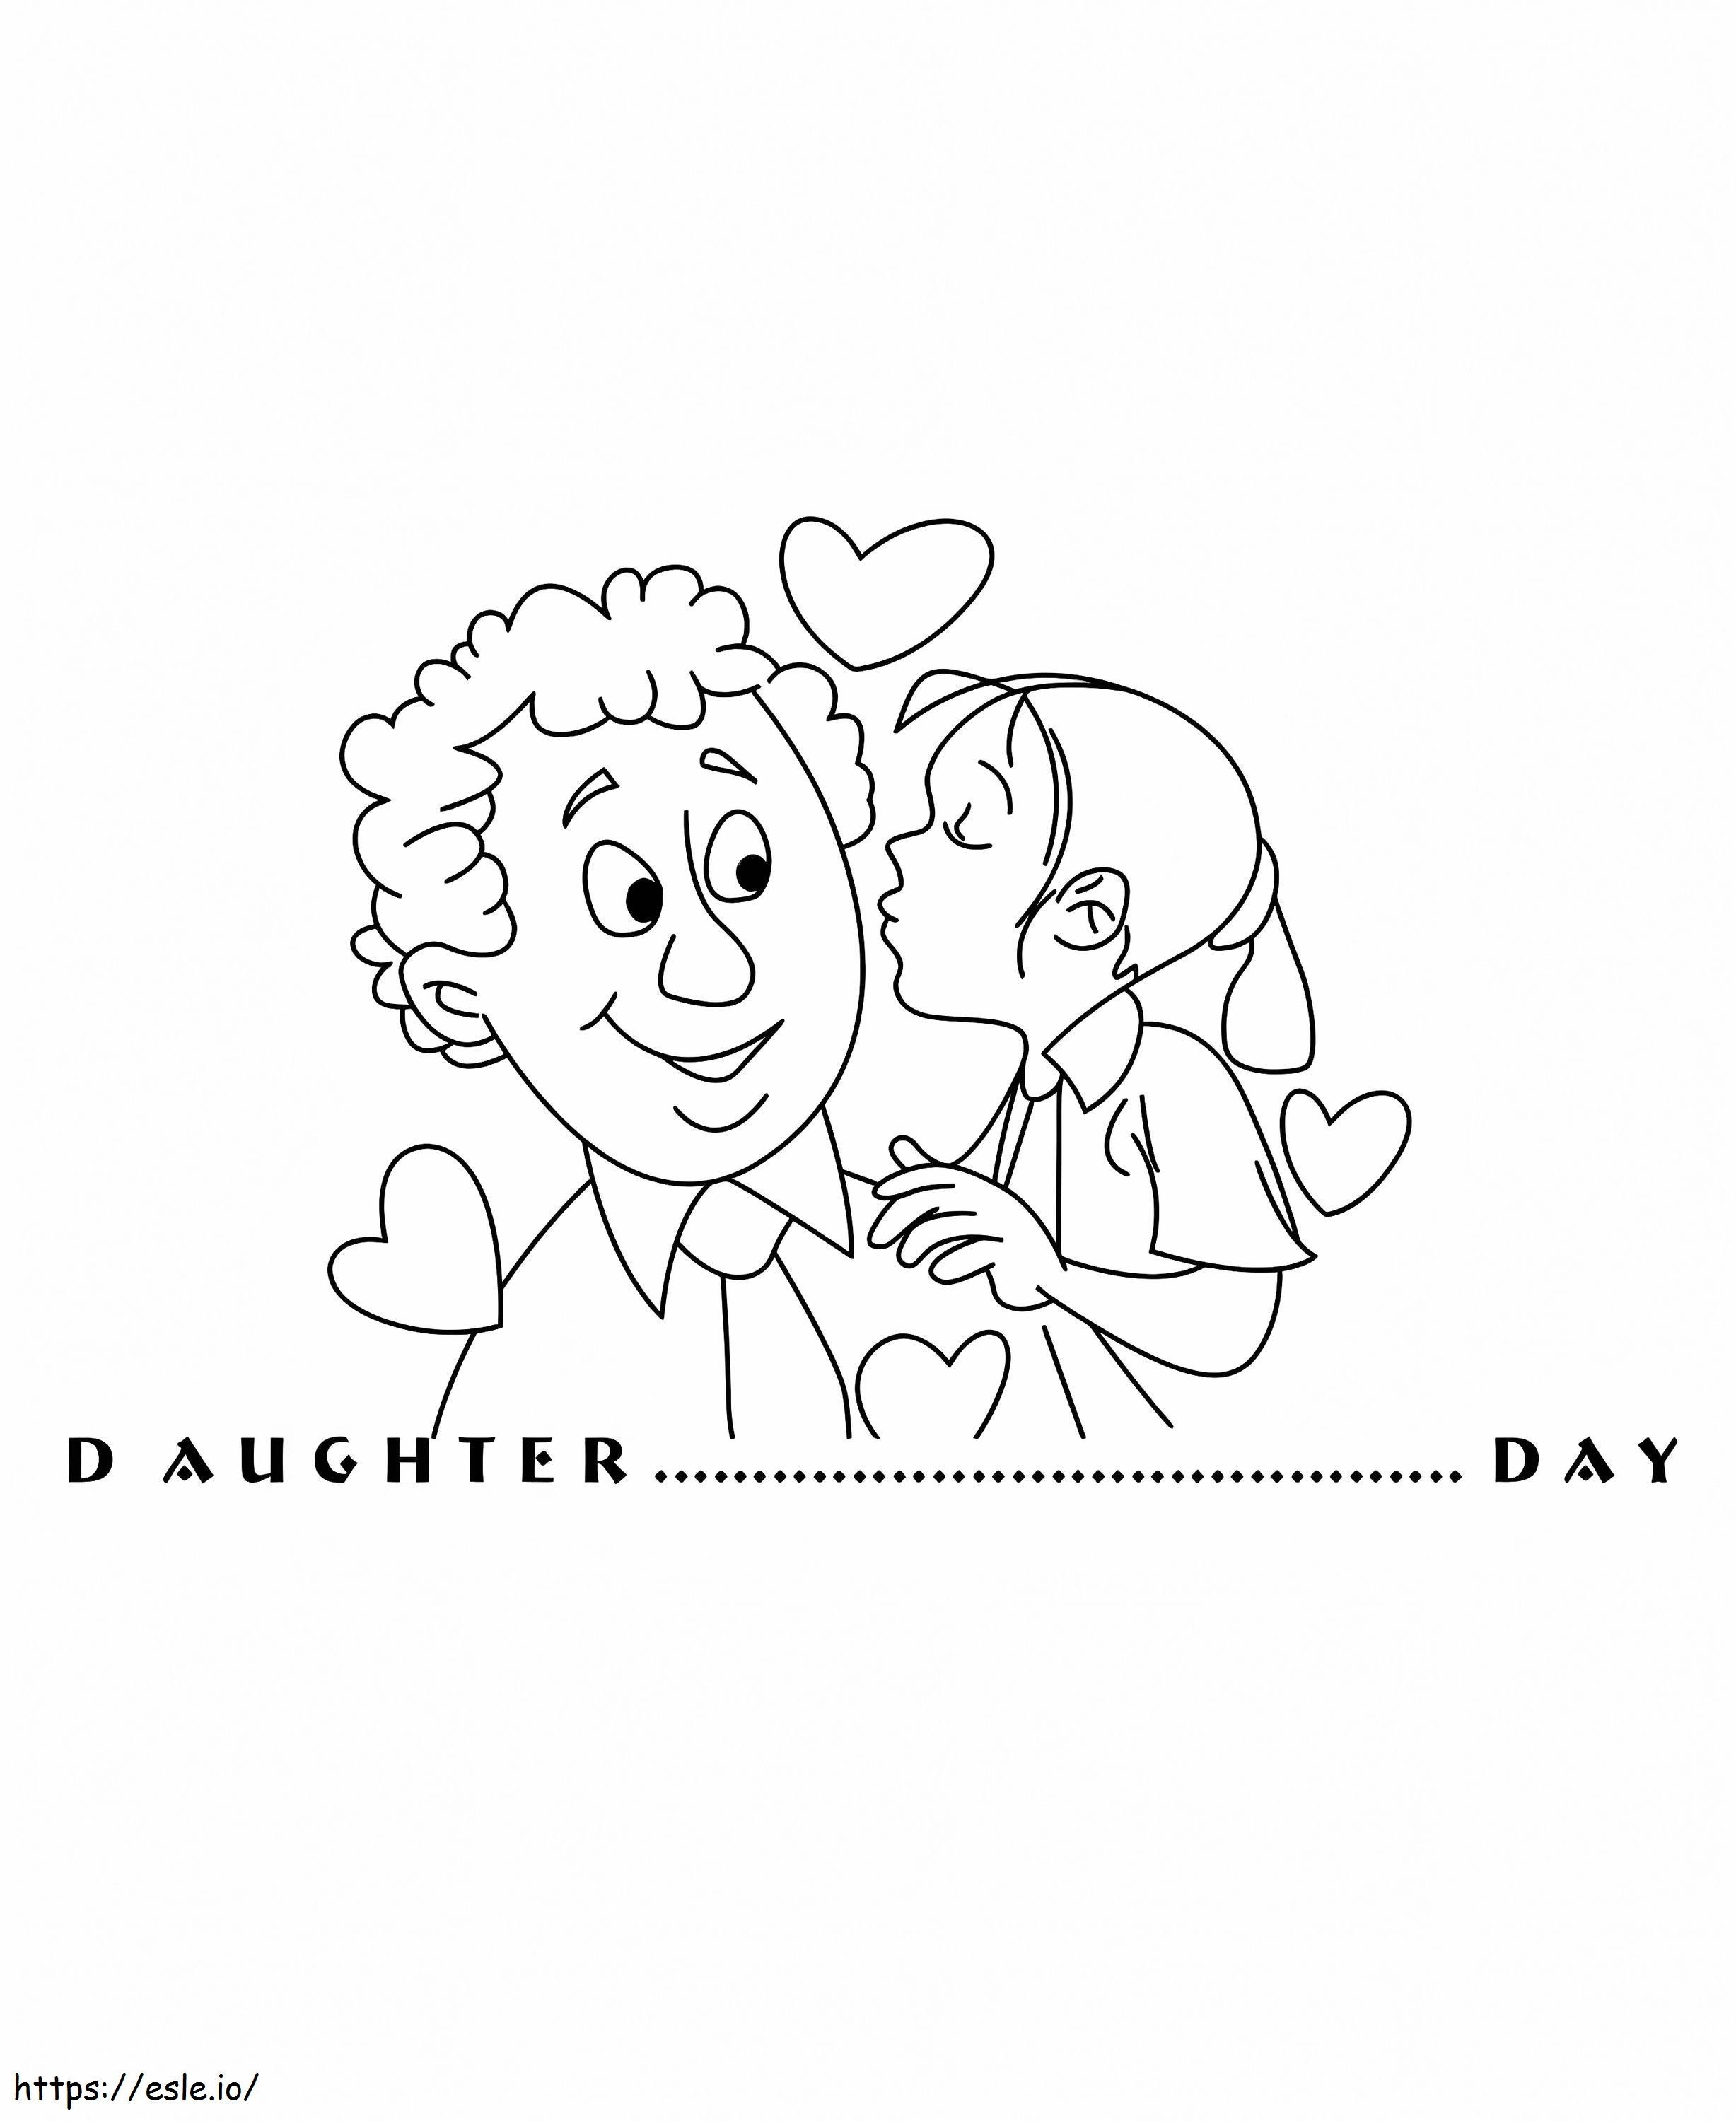 Día de las hijas mi querido papá para colorear